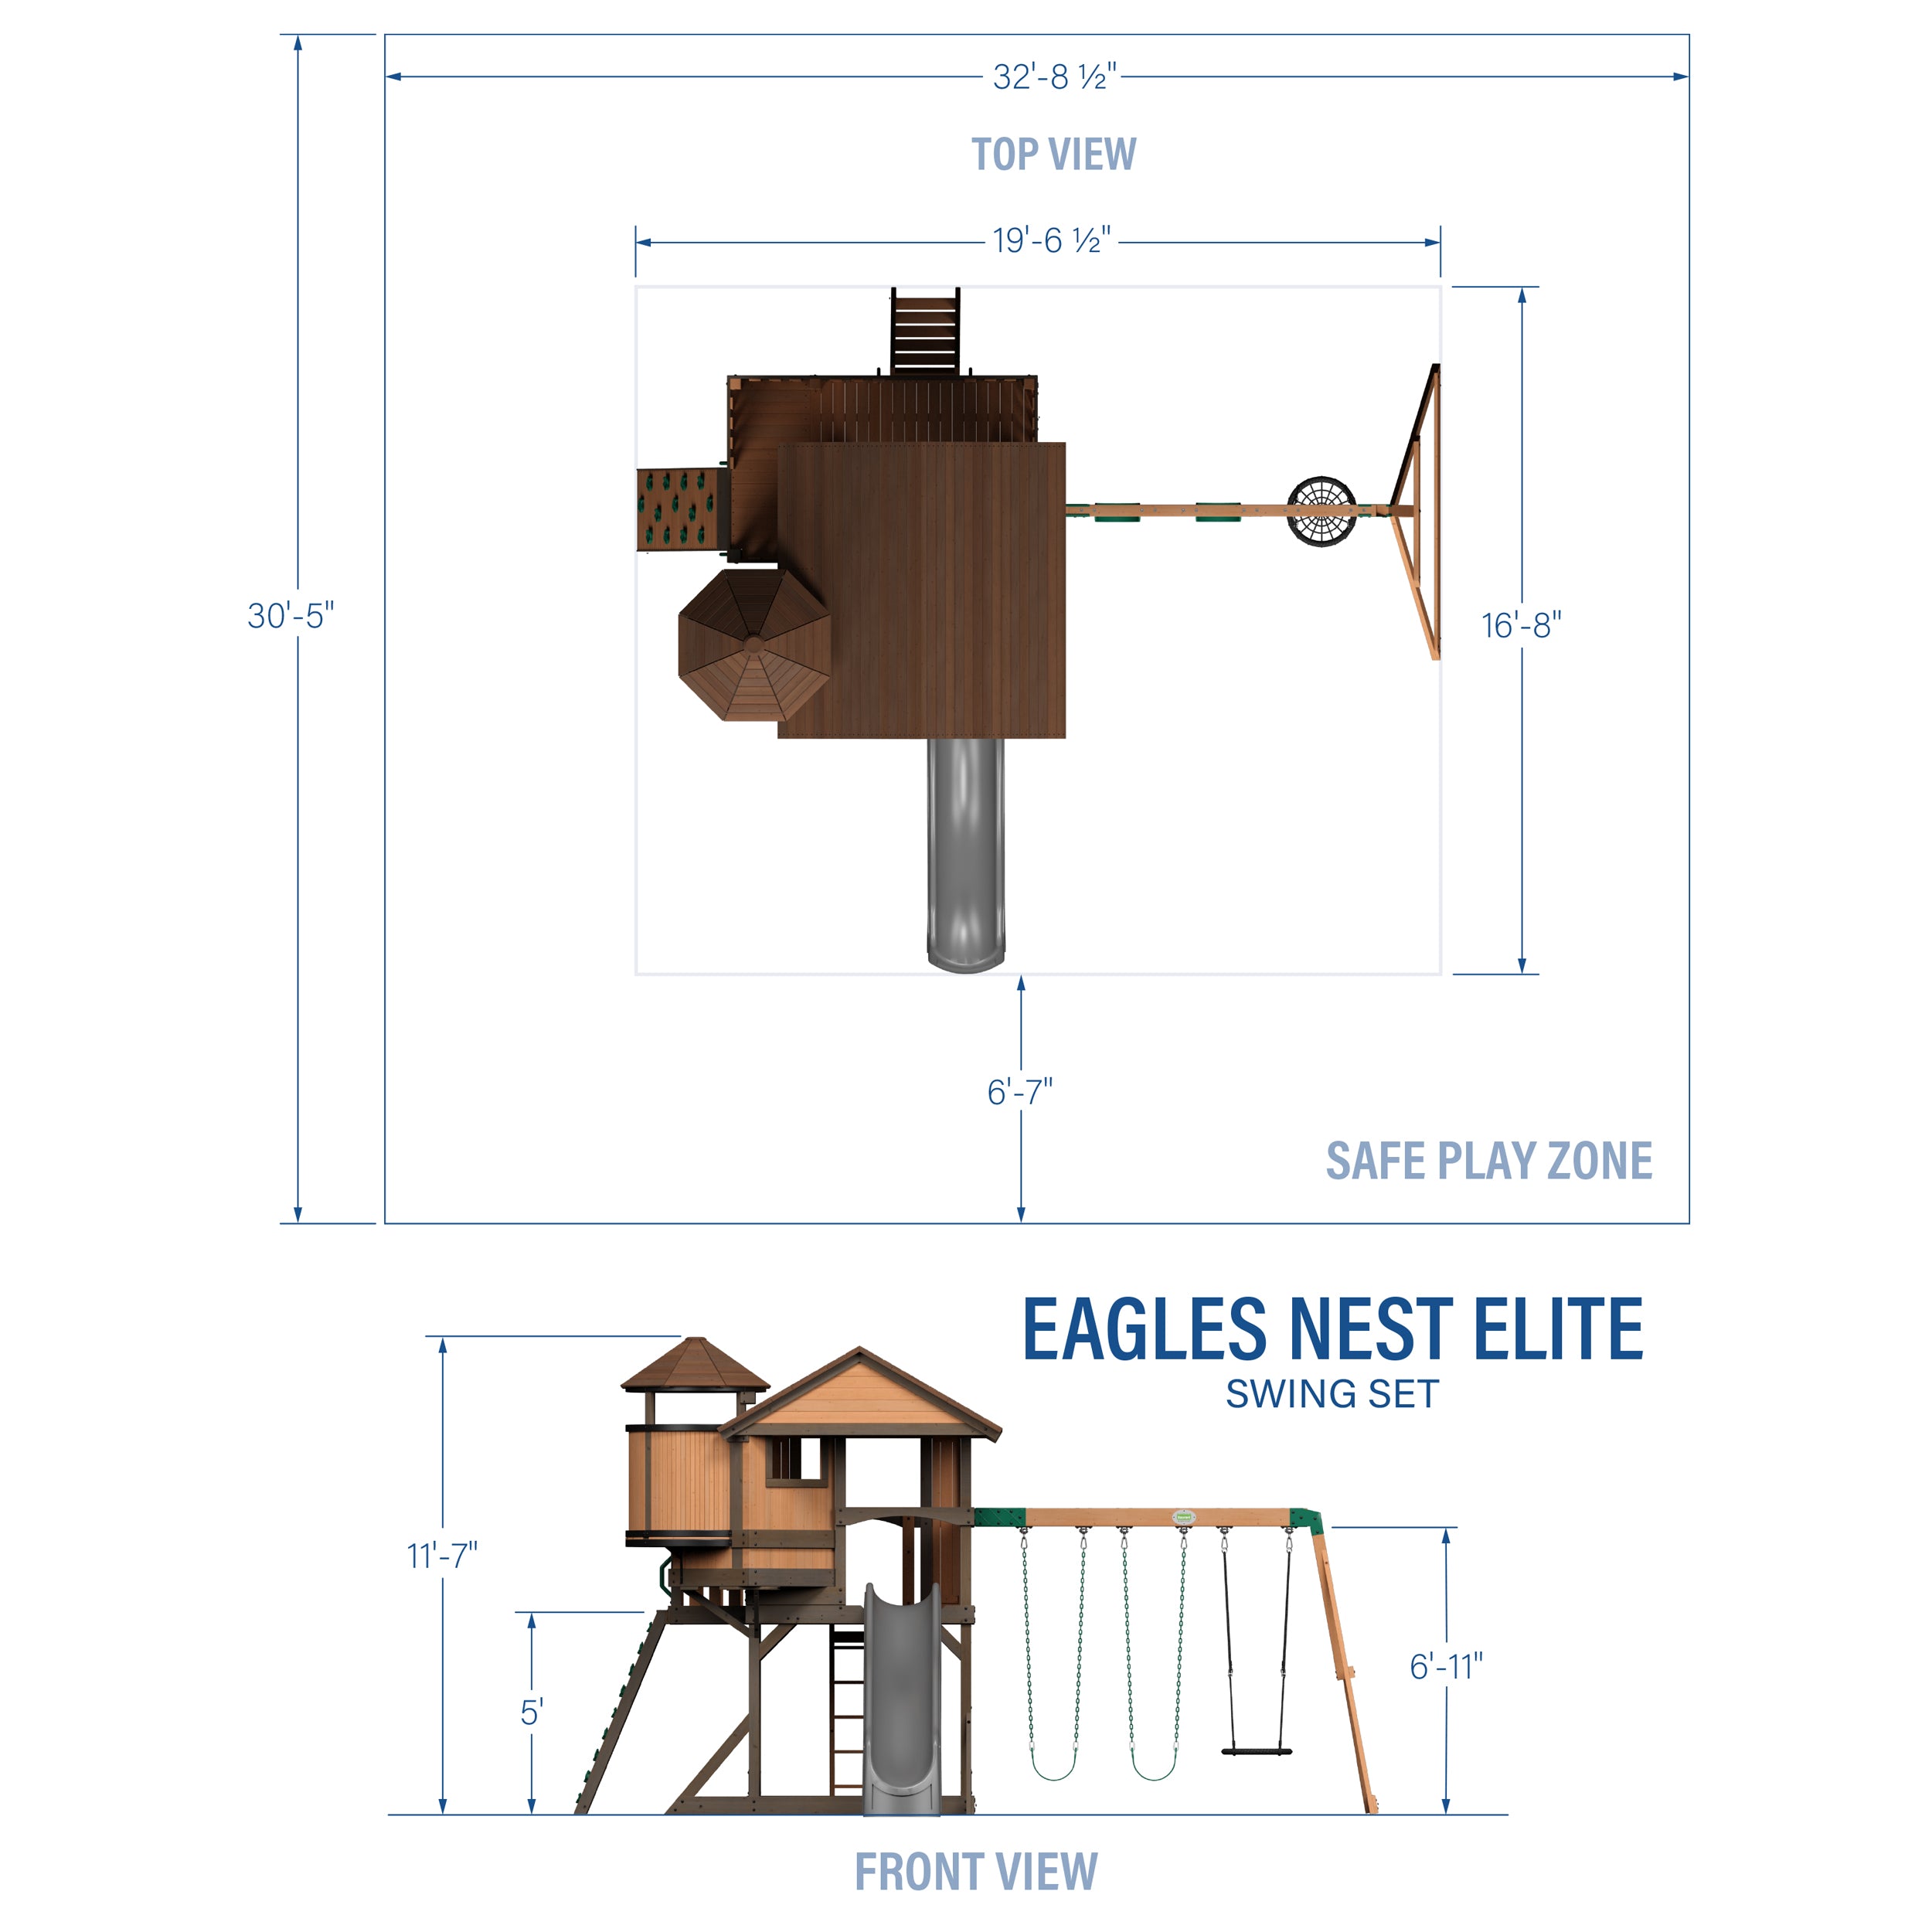 Eagles Nest Elite Swing Set